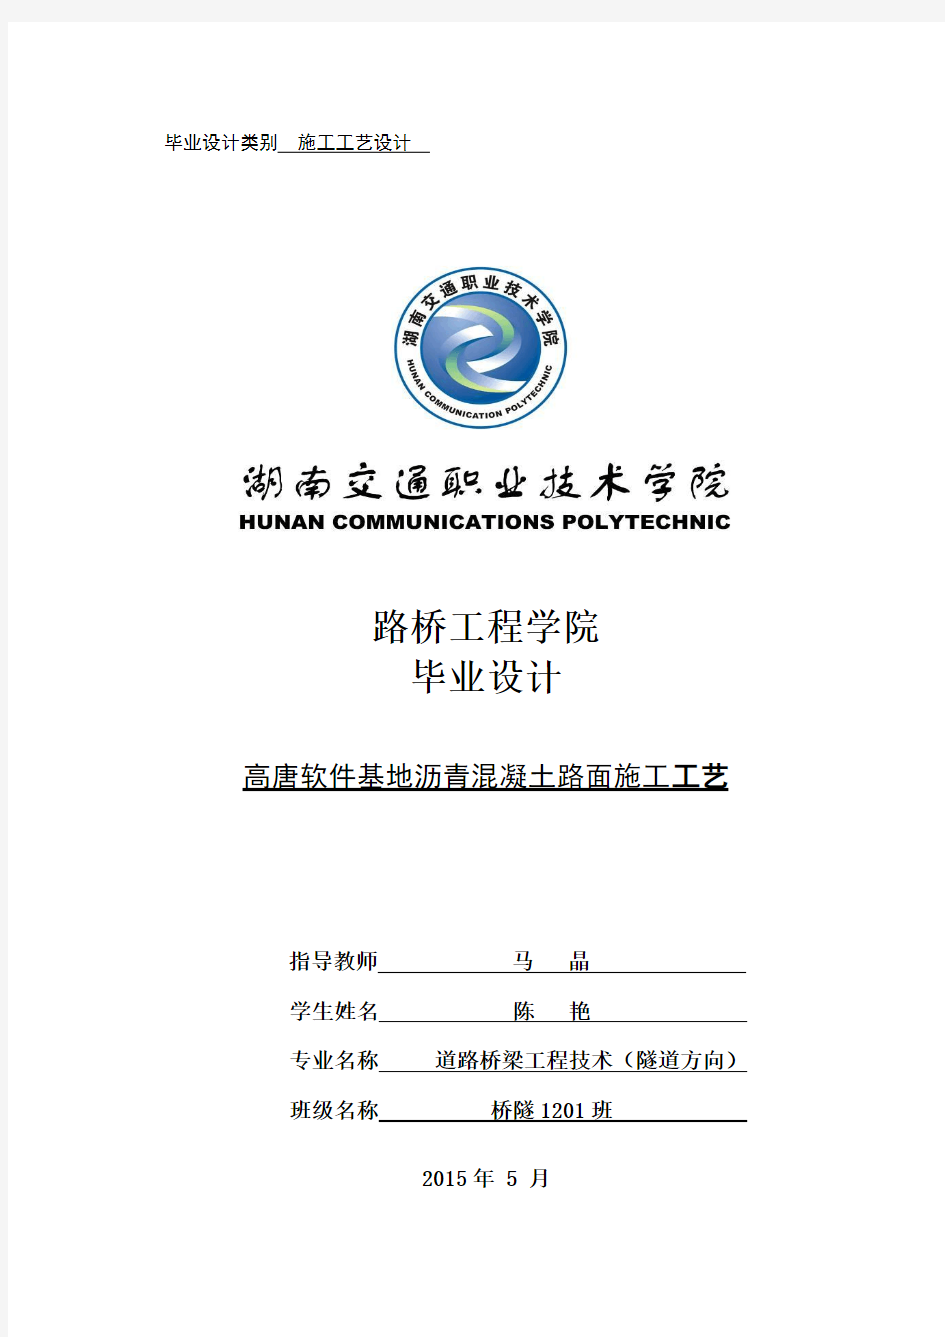 陈艳毕业设计修改版(2015-5-28 13.1.26)